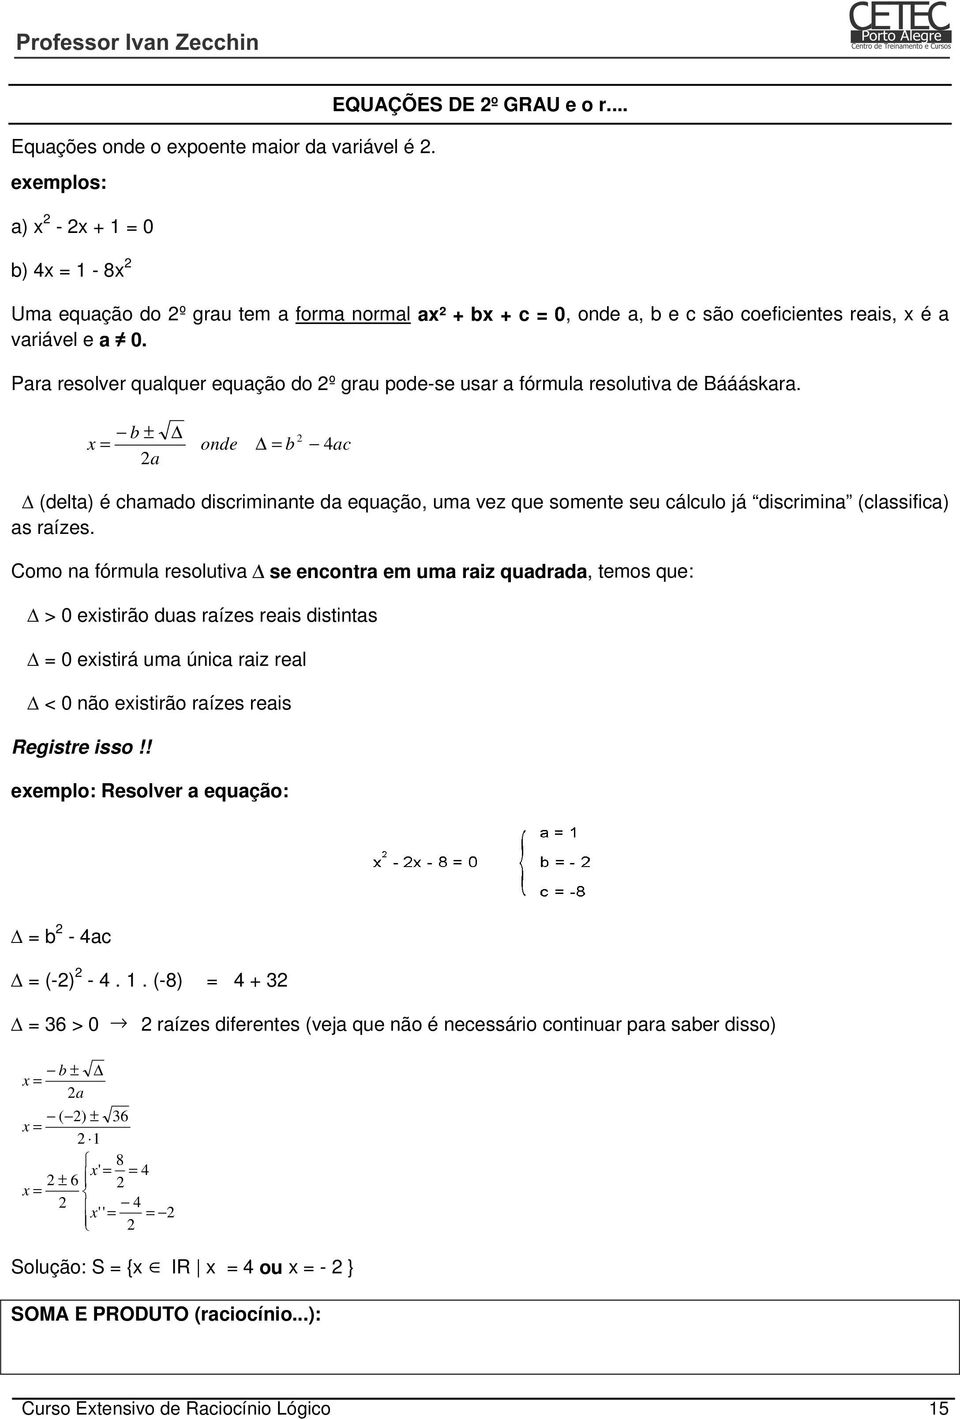 Para resolver qualquer equação do 2º grau pode-se usar a fórmula resolutiva de Báááskara.